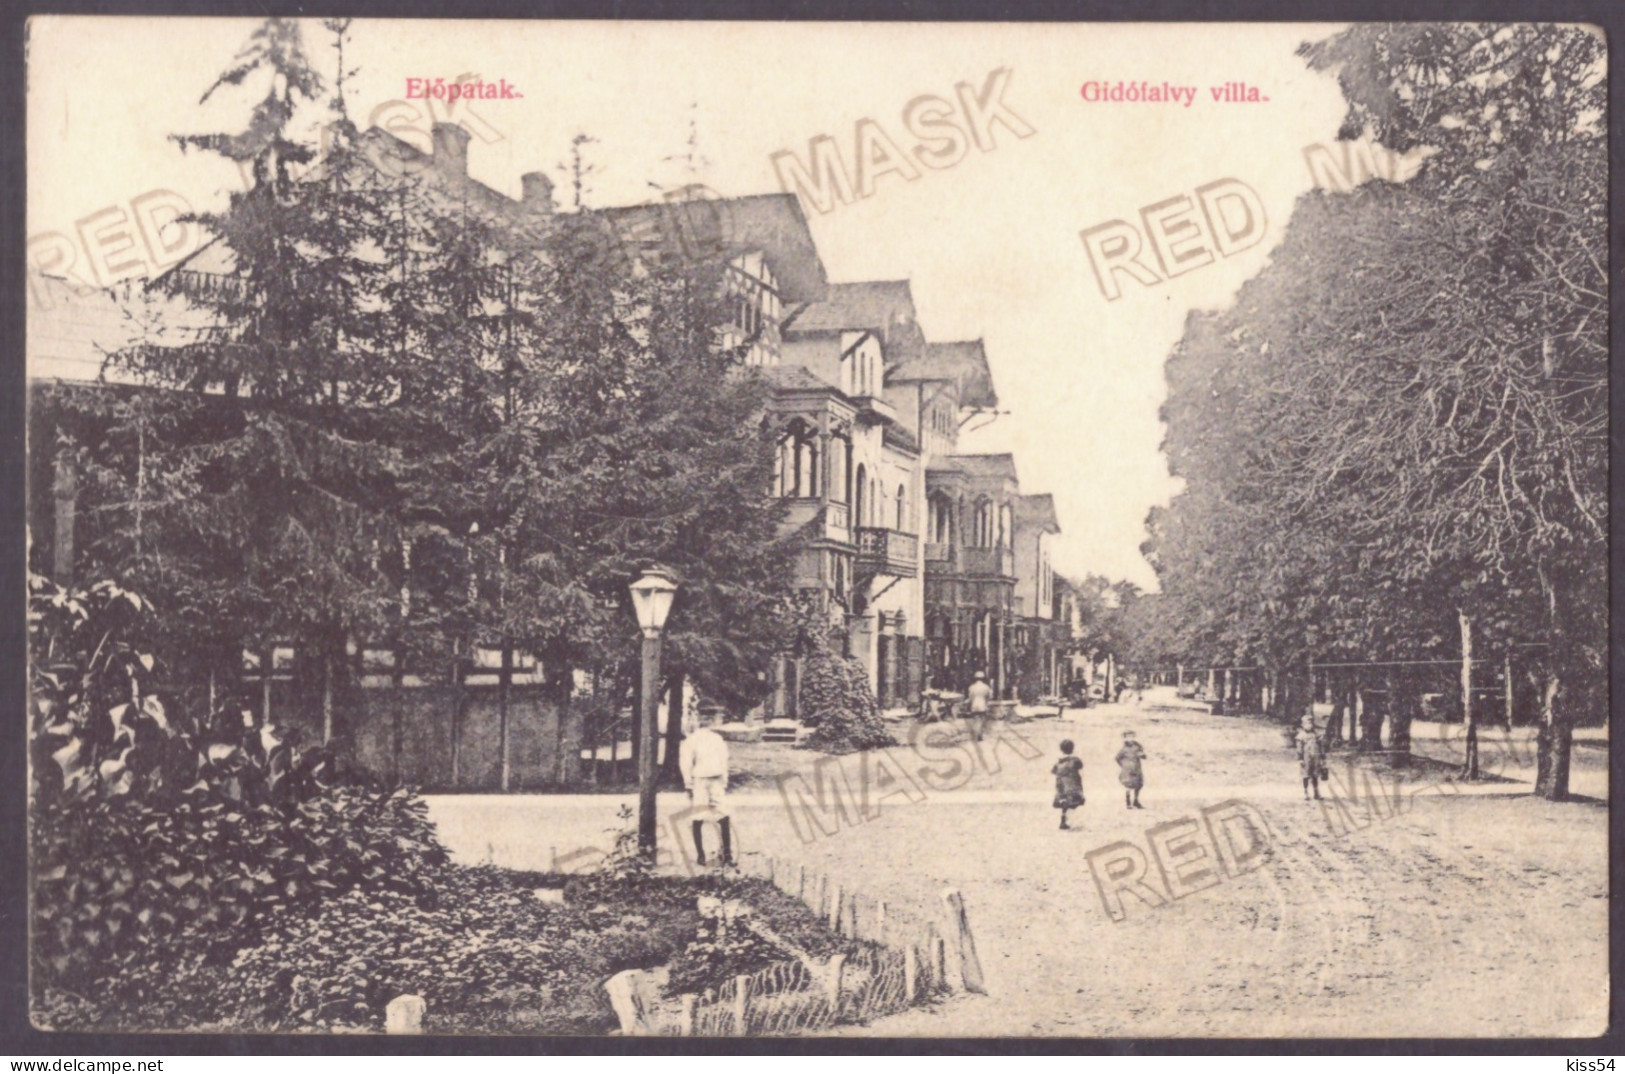 RO 38 - 23118 VALCELE, Covasna, Romania - Old Postcard - Used - 1911 - Romania